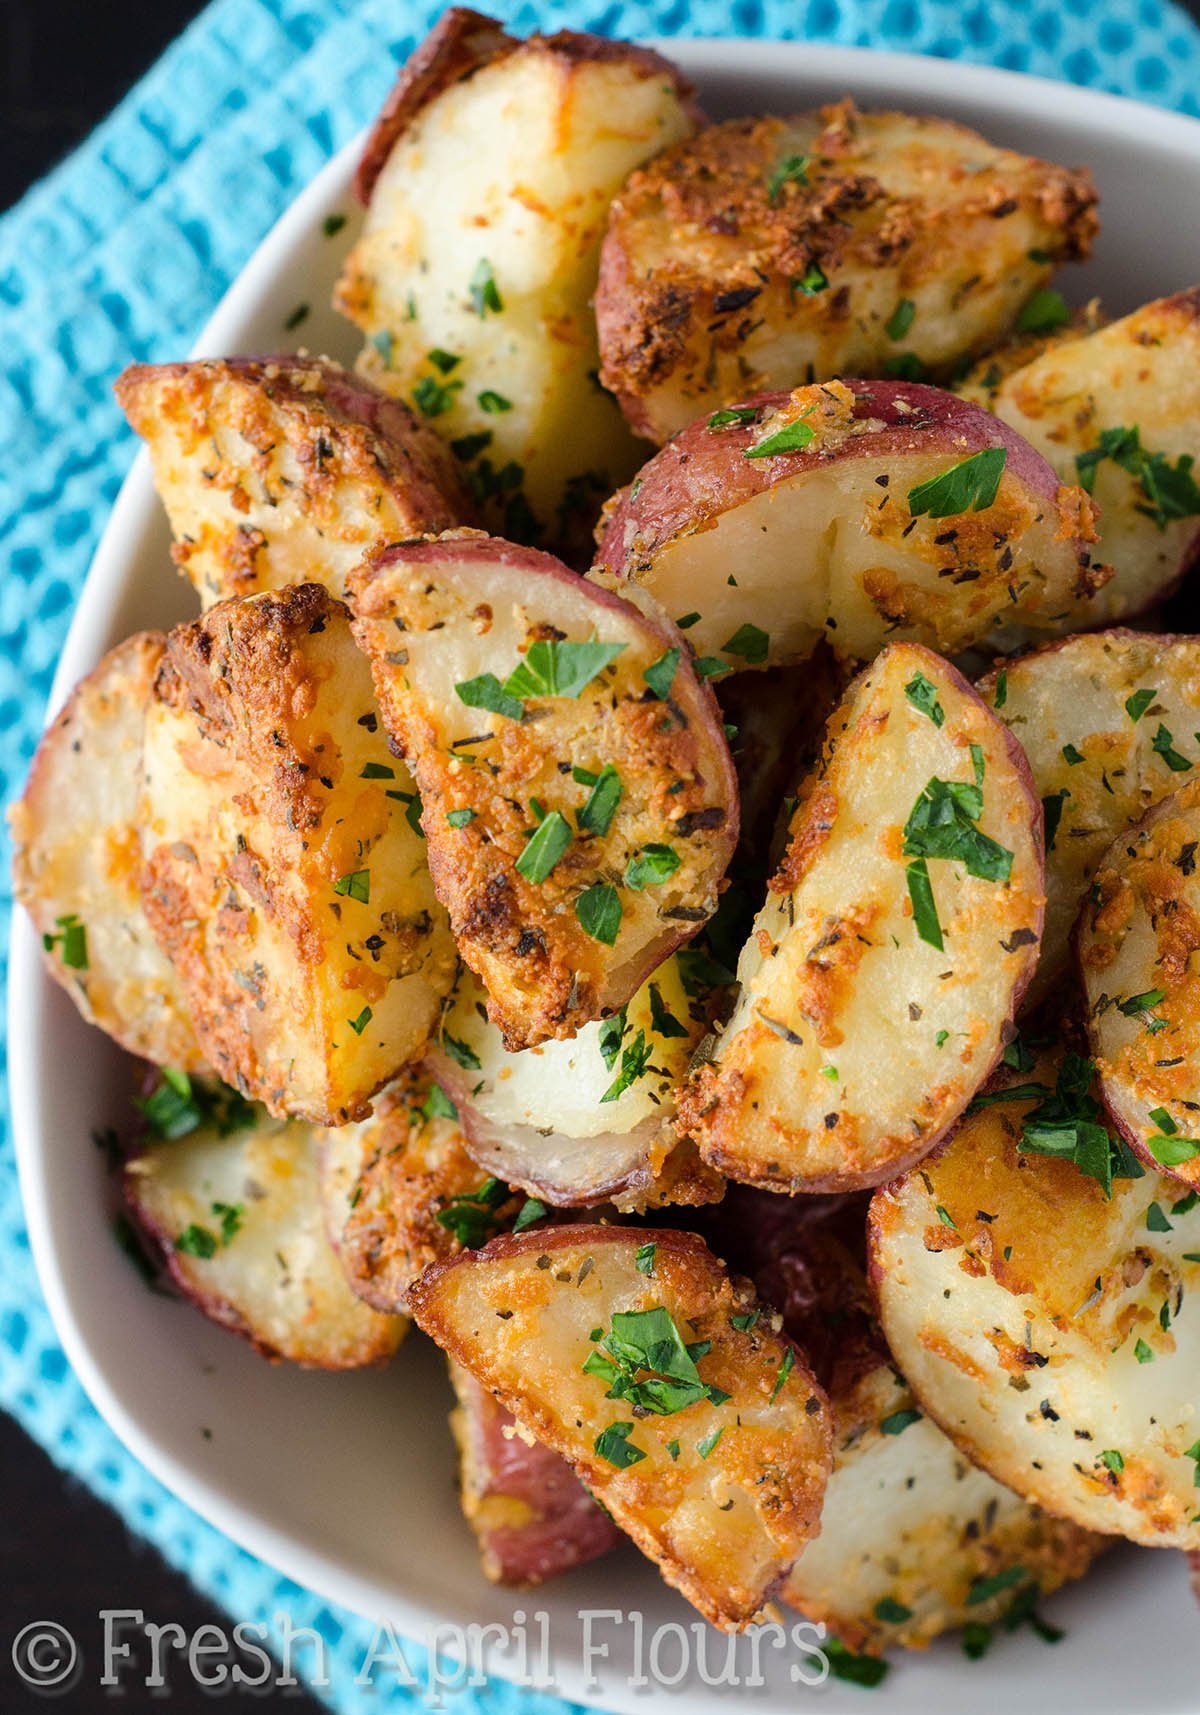 Картофель блюда на скорую. Запеченный картофель. Печеный картофель. Картошка в духовке. Вкуснейшая картошка в духовке.